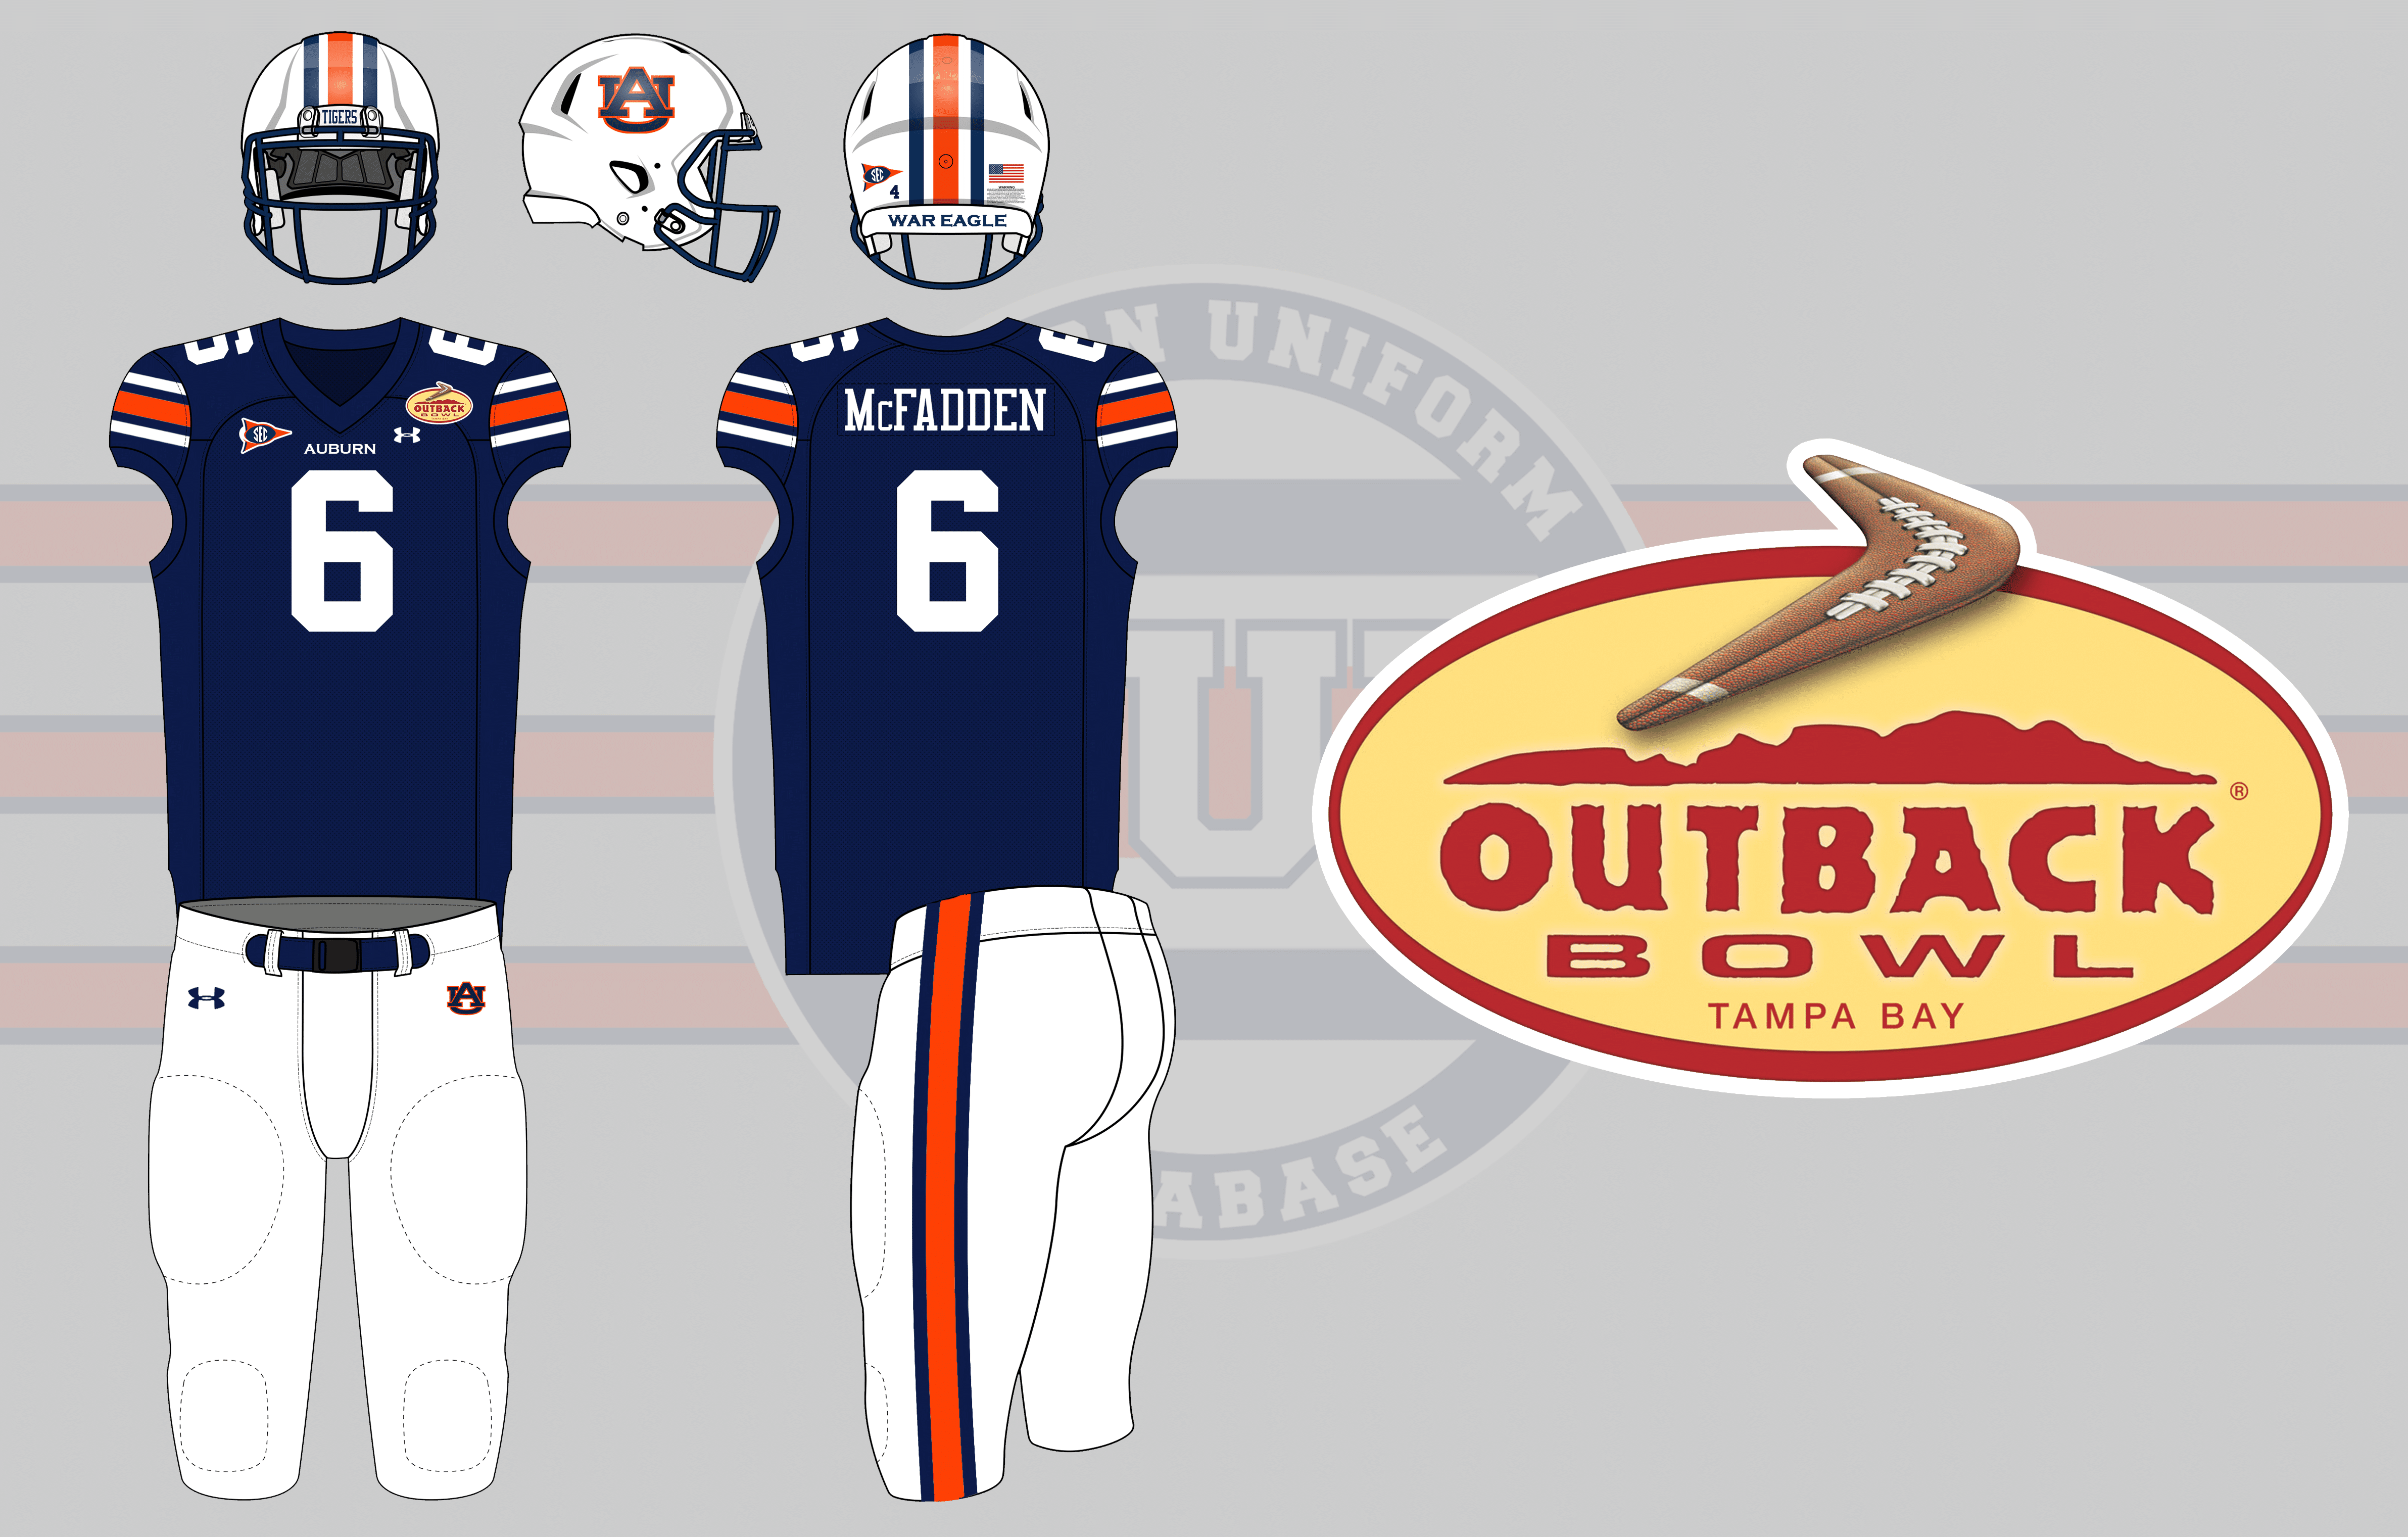 Gators' Outback Bowl uniforms